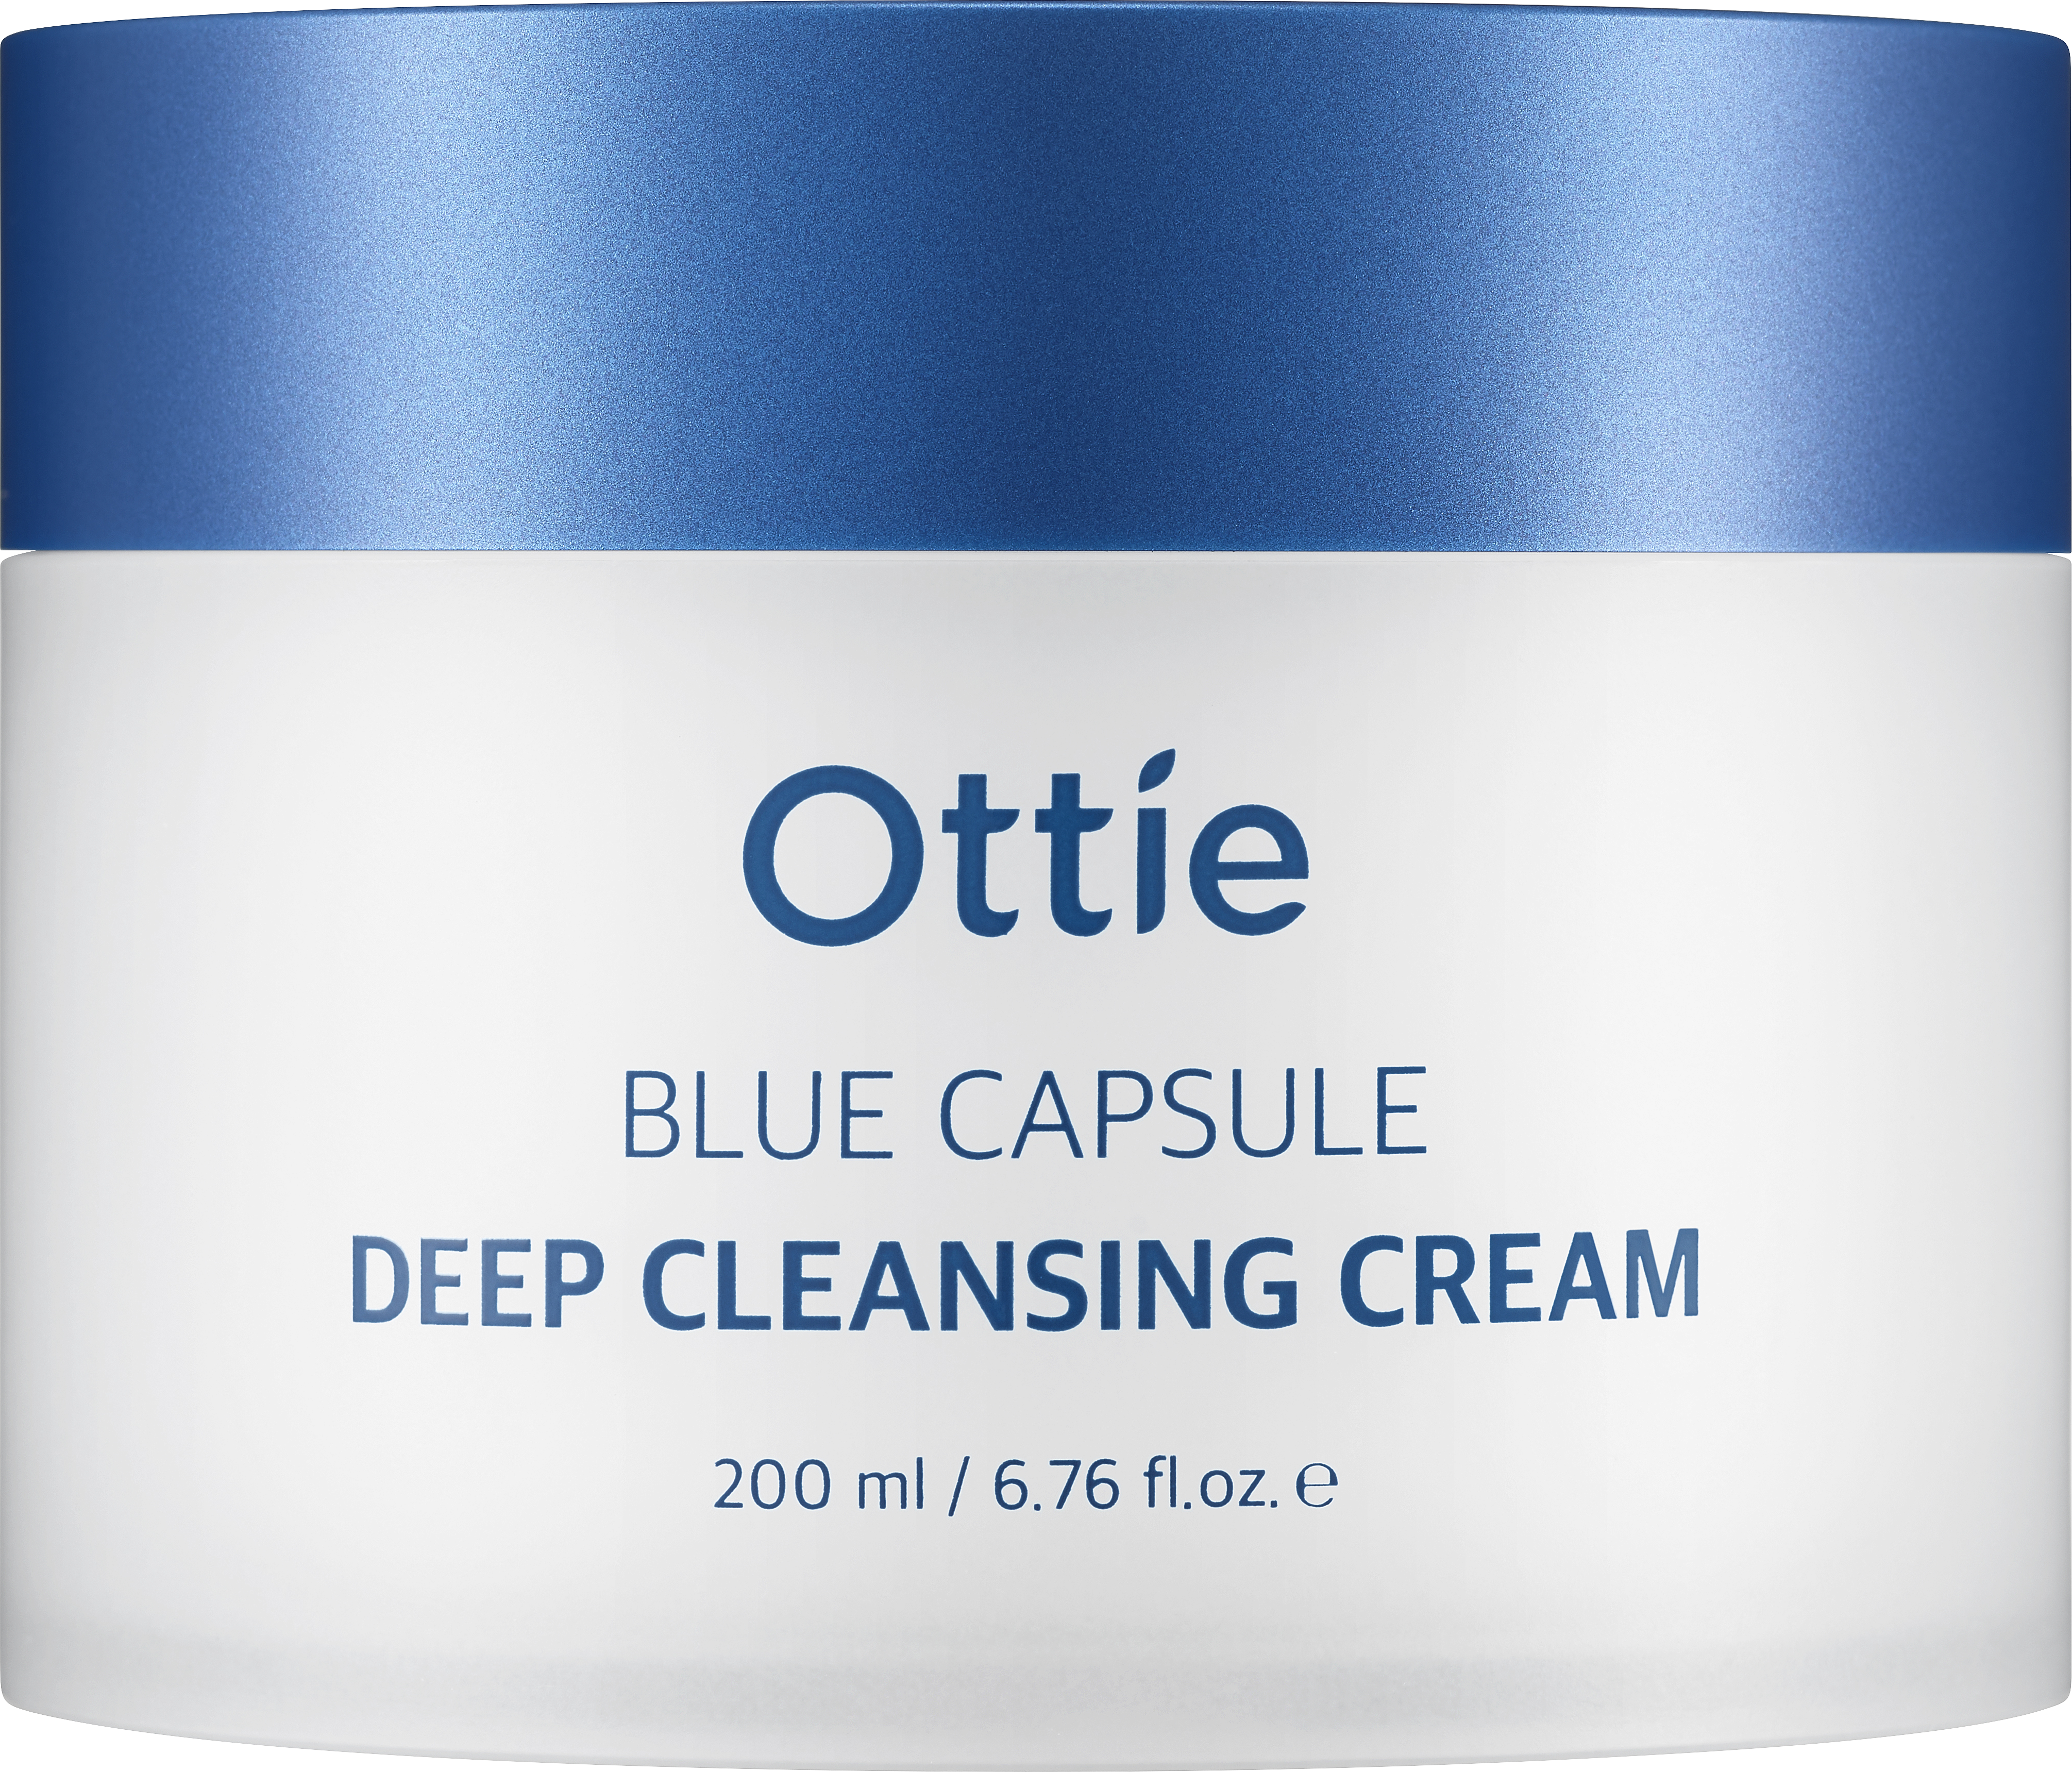 Ottie Blue Capsule Deep Cleansing Cream